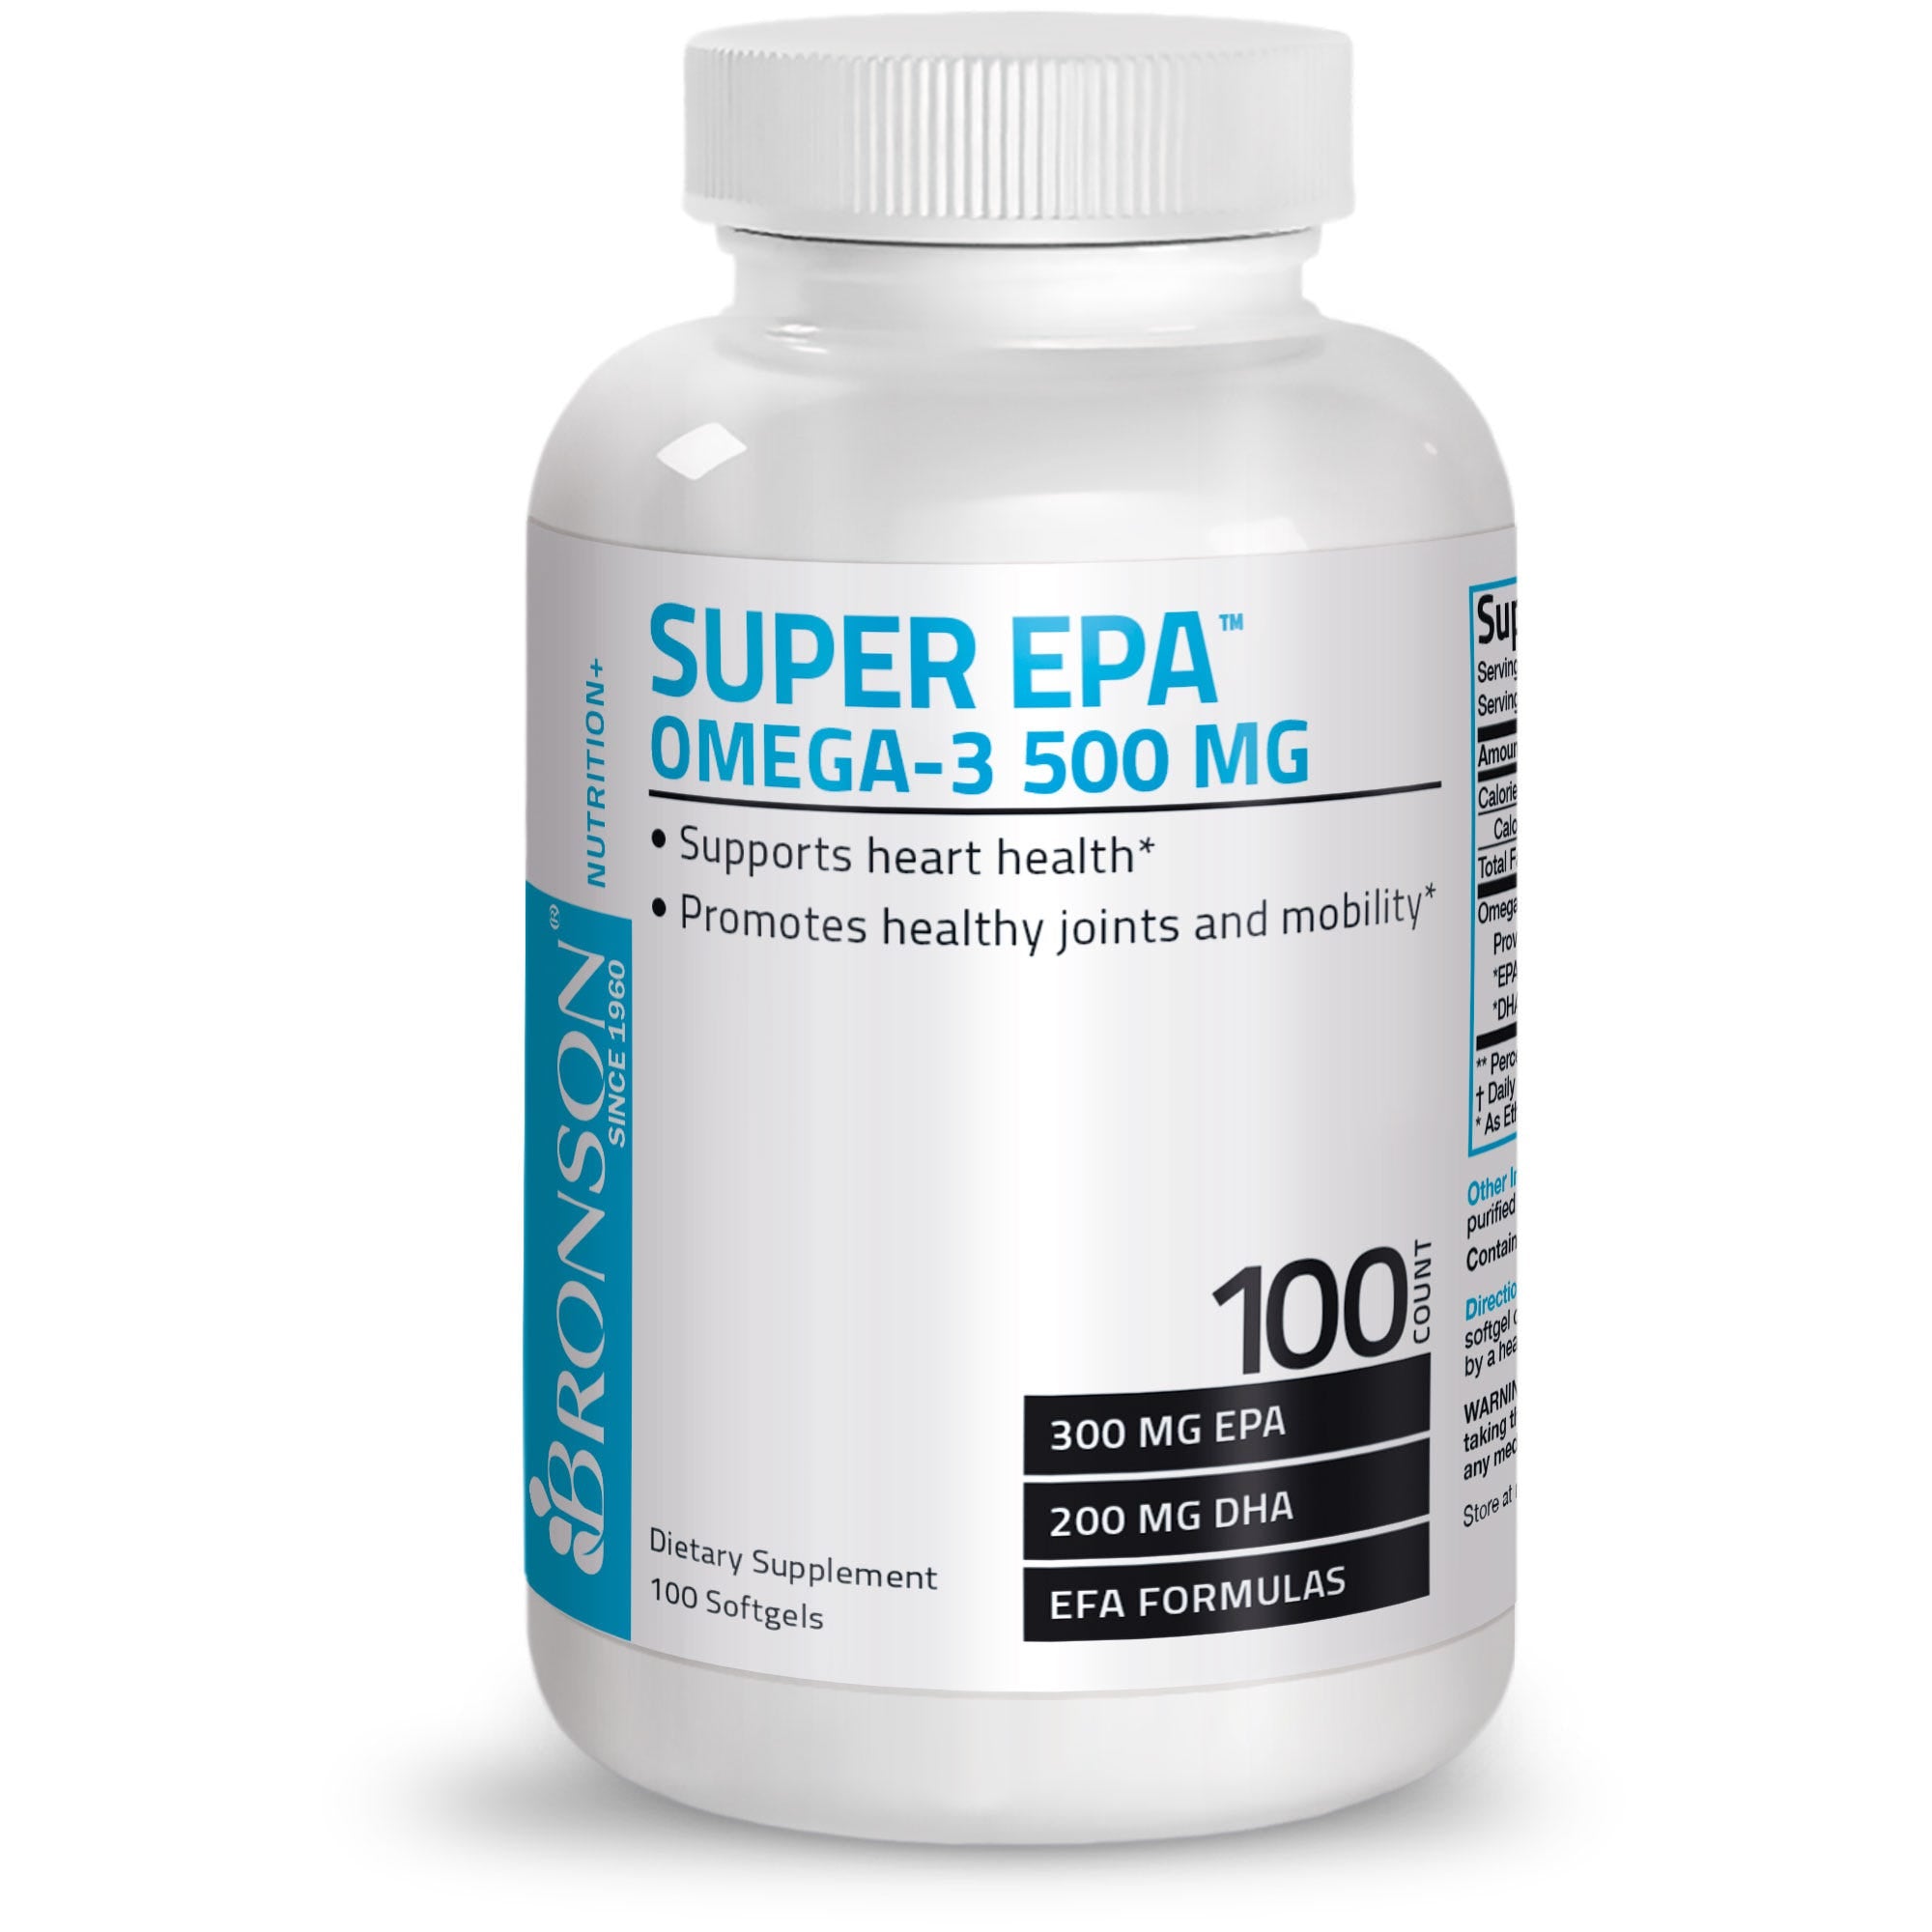 Super Omega-3 EPA DHA Fatty Acids - 500 mg view 1 of 4